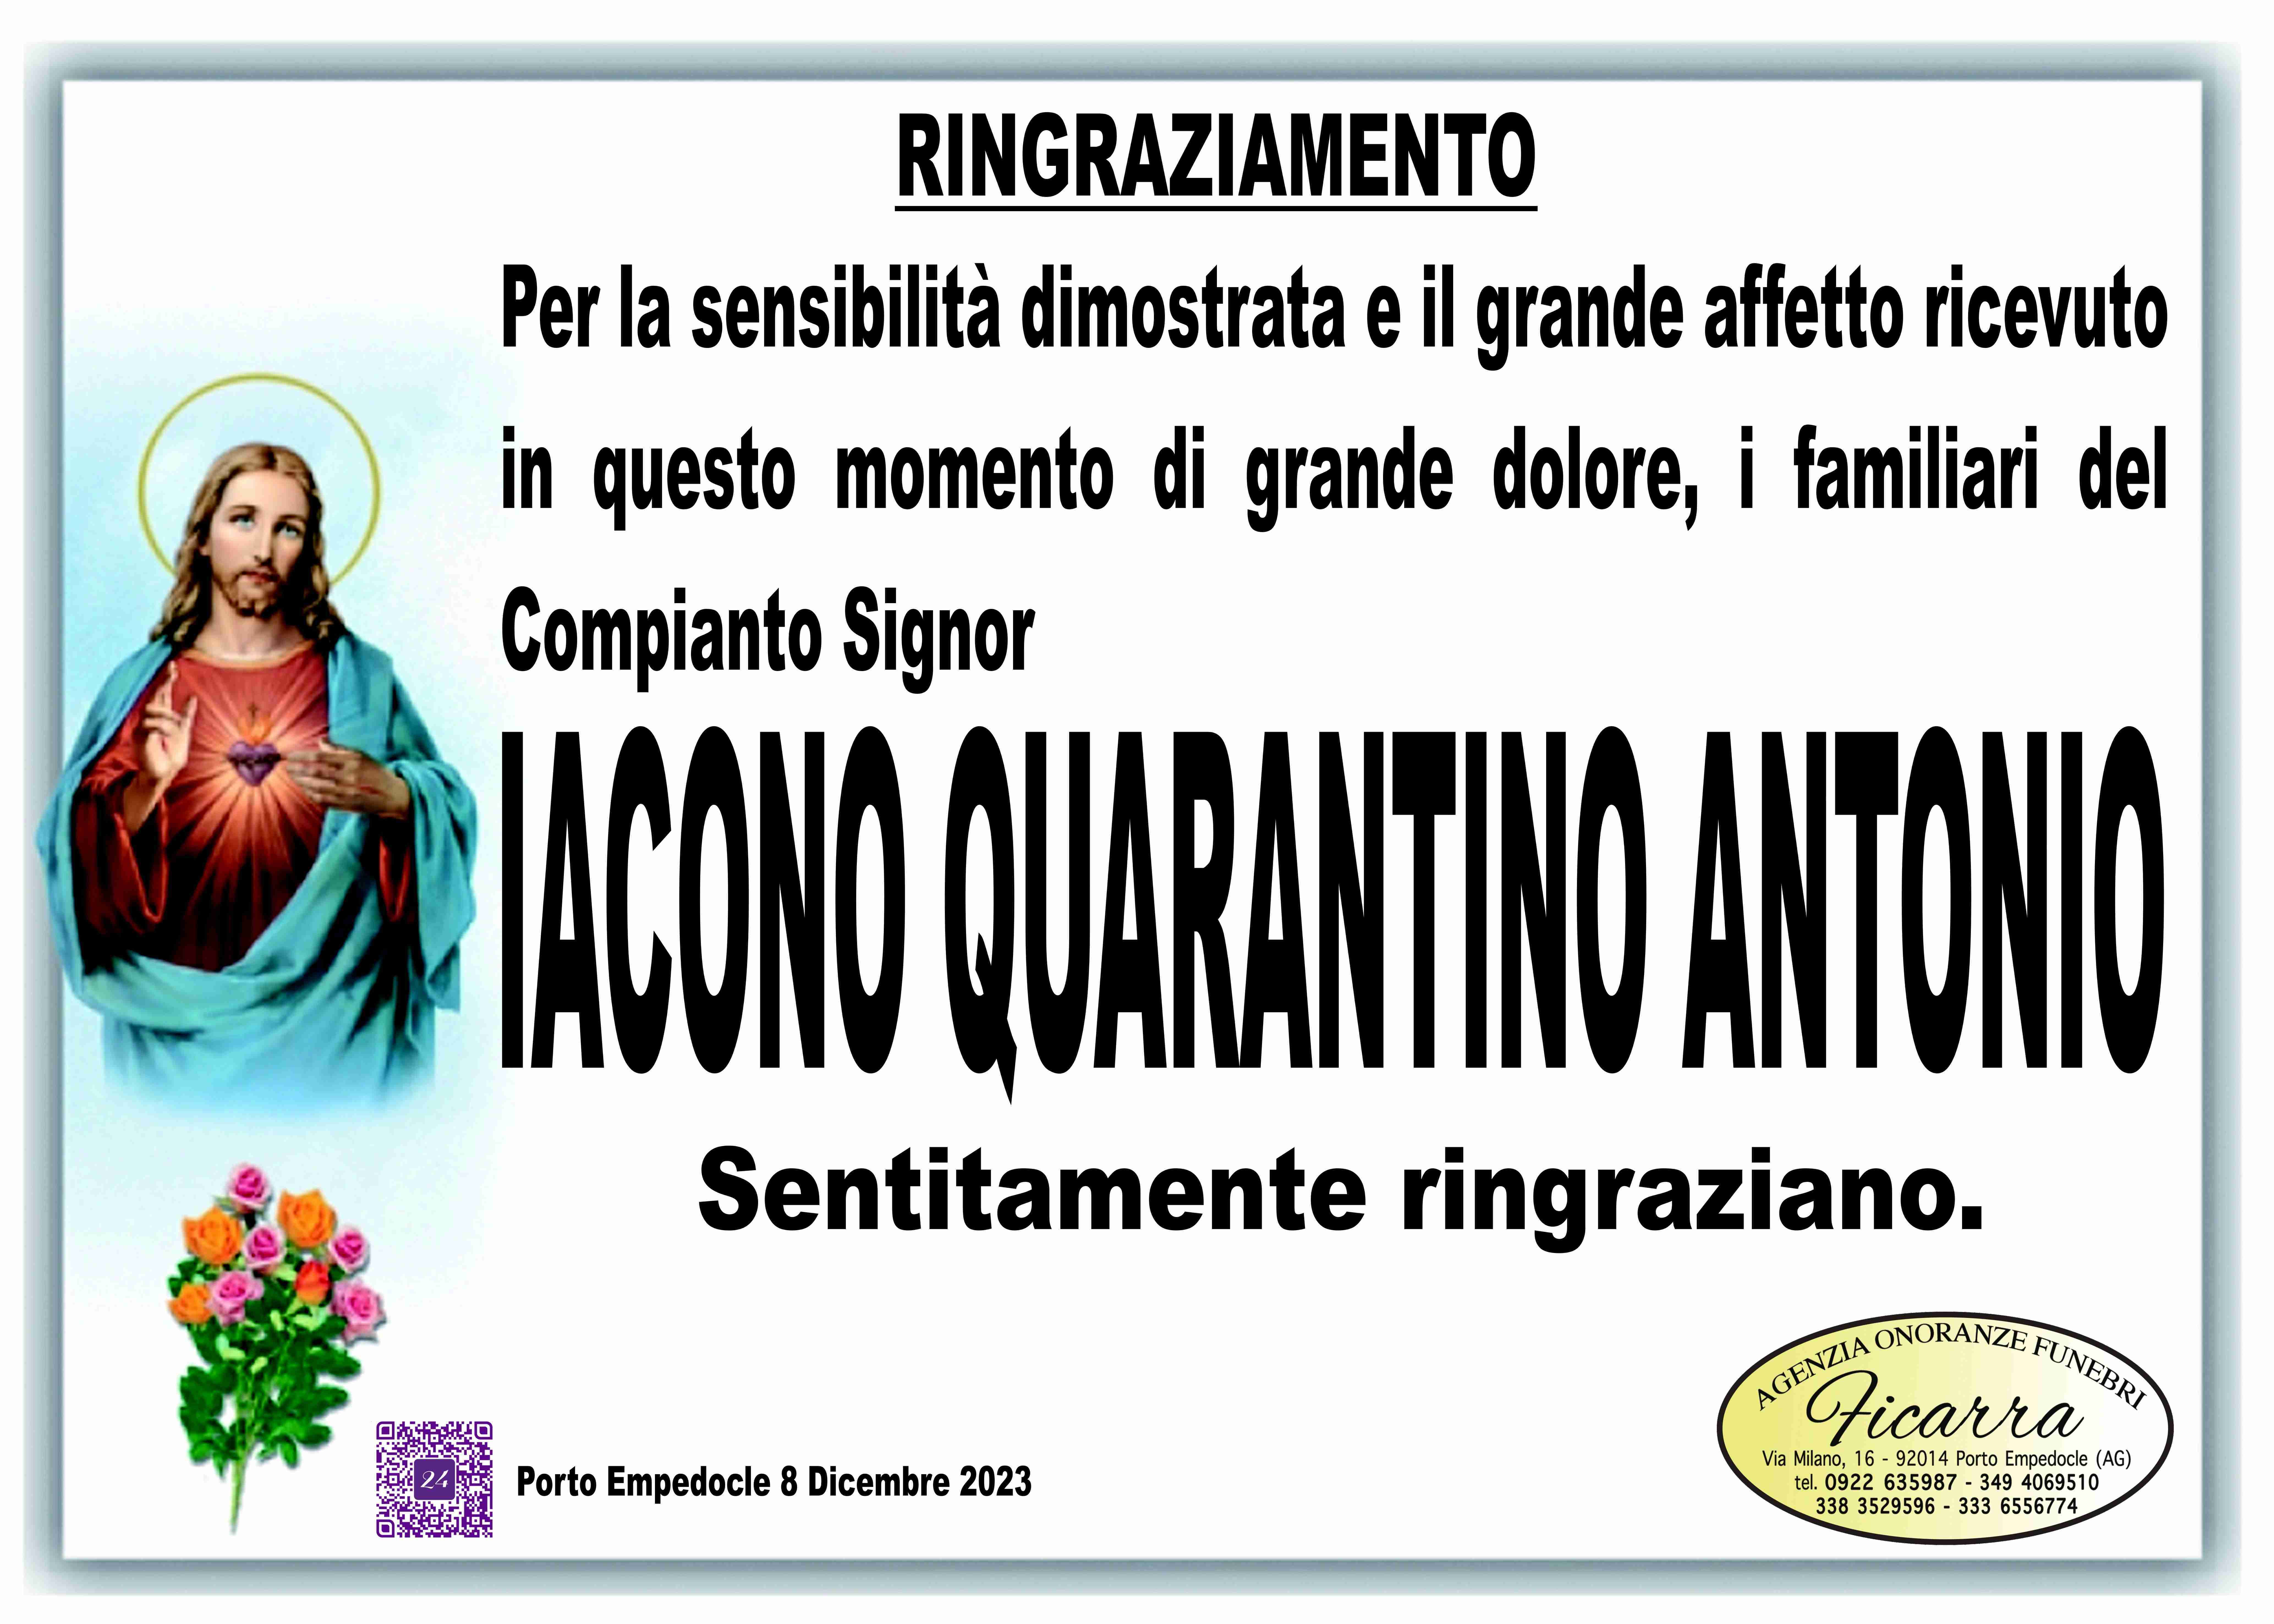 Antonio Iacono Quarantino